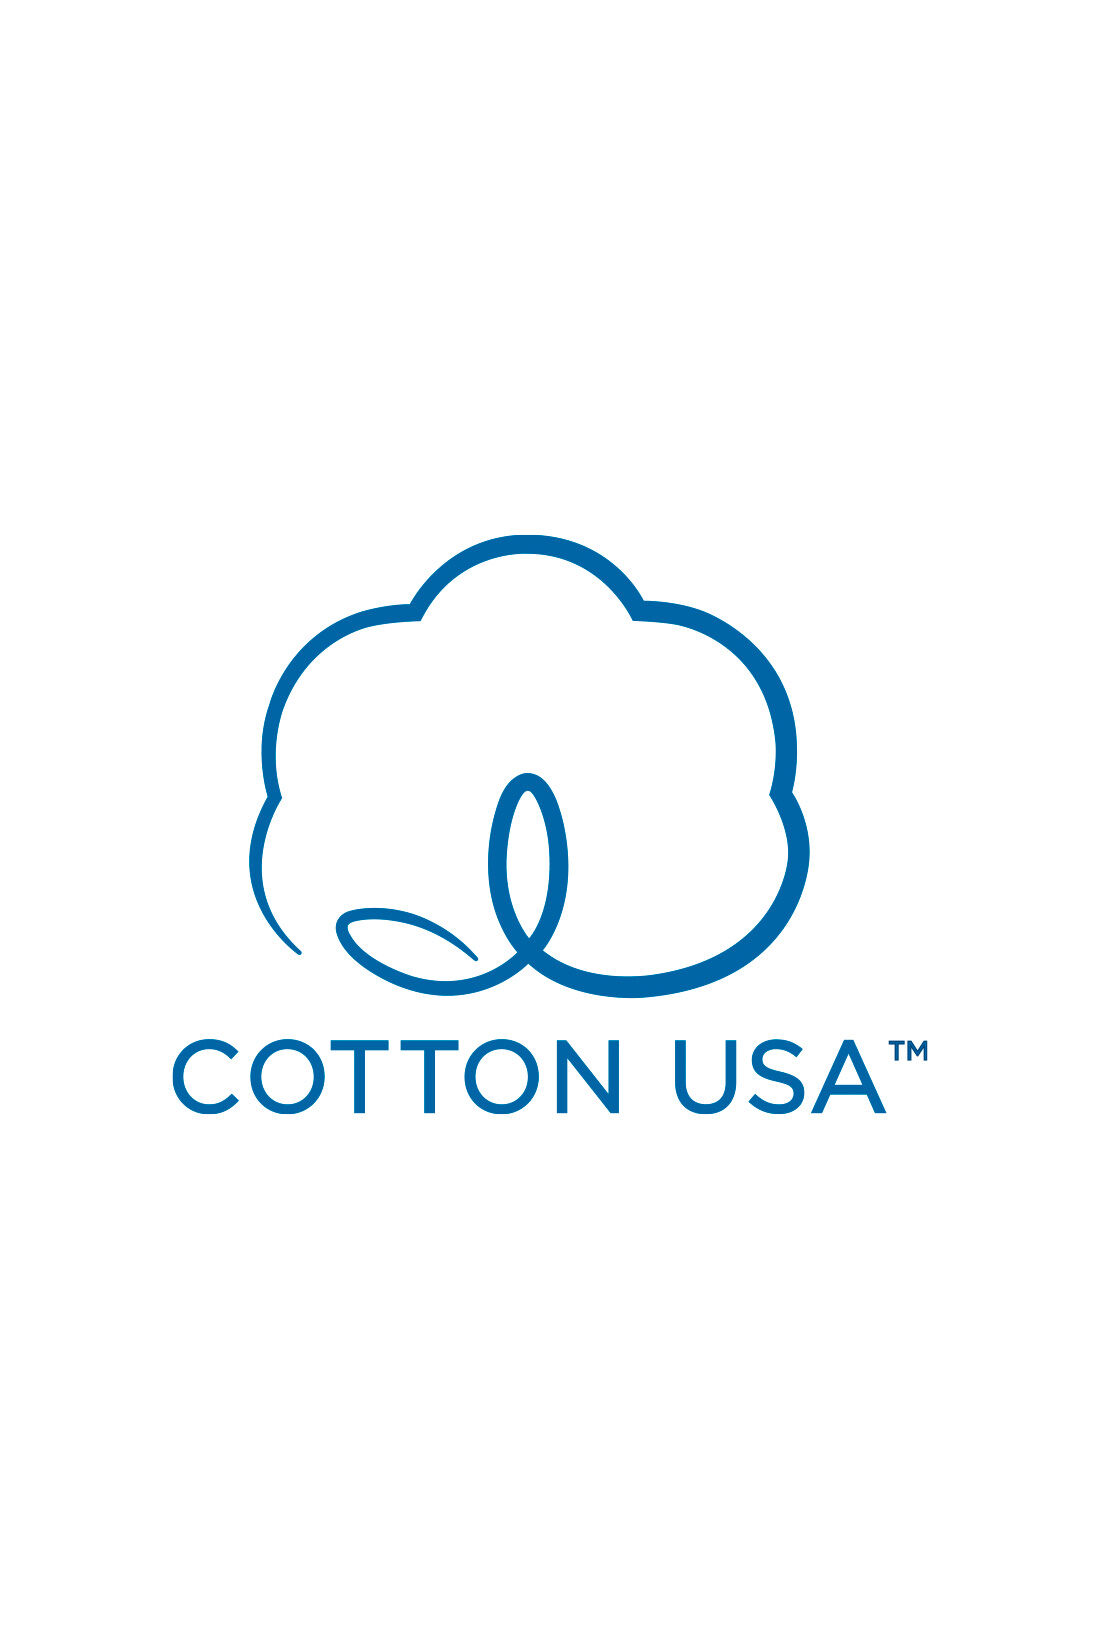 MEDE19F|MEDE19F　USAコットン　グラフ誌LIFEフォトプリントTシャツ〈ホワイト〉|【USAコットン】アメリカ綿を使用した優秀な品質の商品にのみ使用を認められた、COTTON USA（TM）のマーク付き。持続可能な生産を目指し、環境に配慮した農法で栽培された綿花を使用。働き手の適正賃金、安全な作業環境の徹底など生産者にもやさしいサステナブルなコットンです。